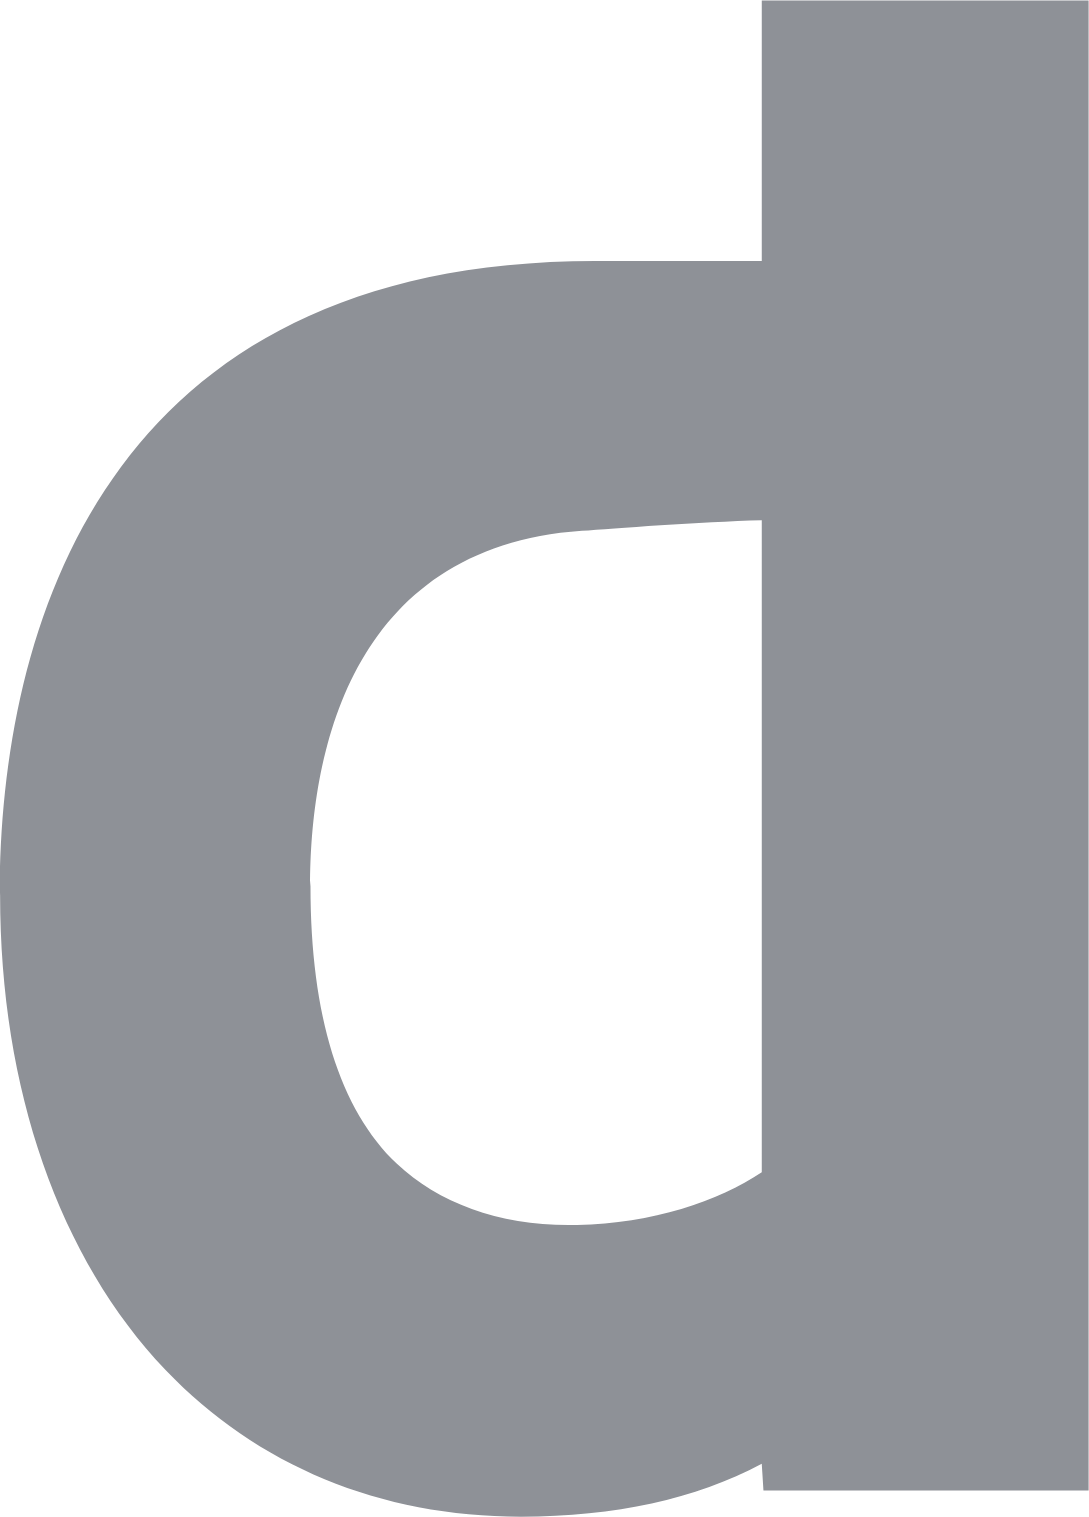 Dentsu logo in transparent PNG format